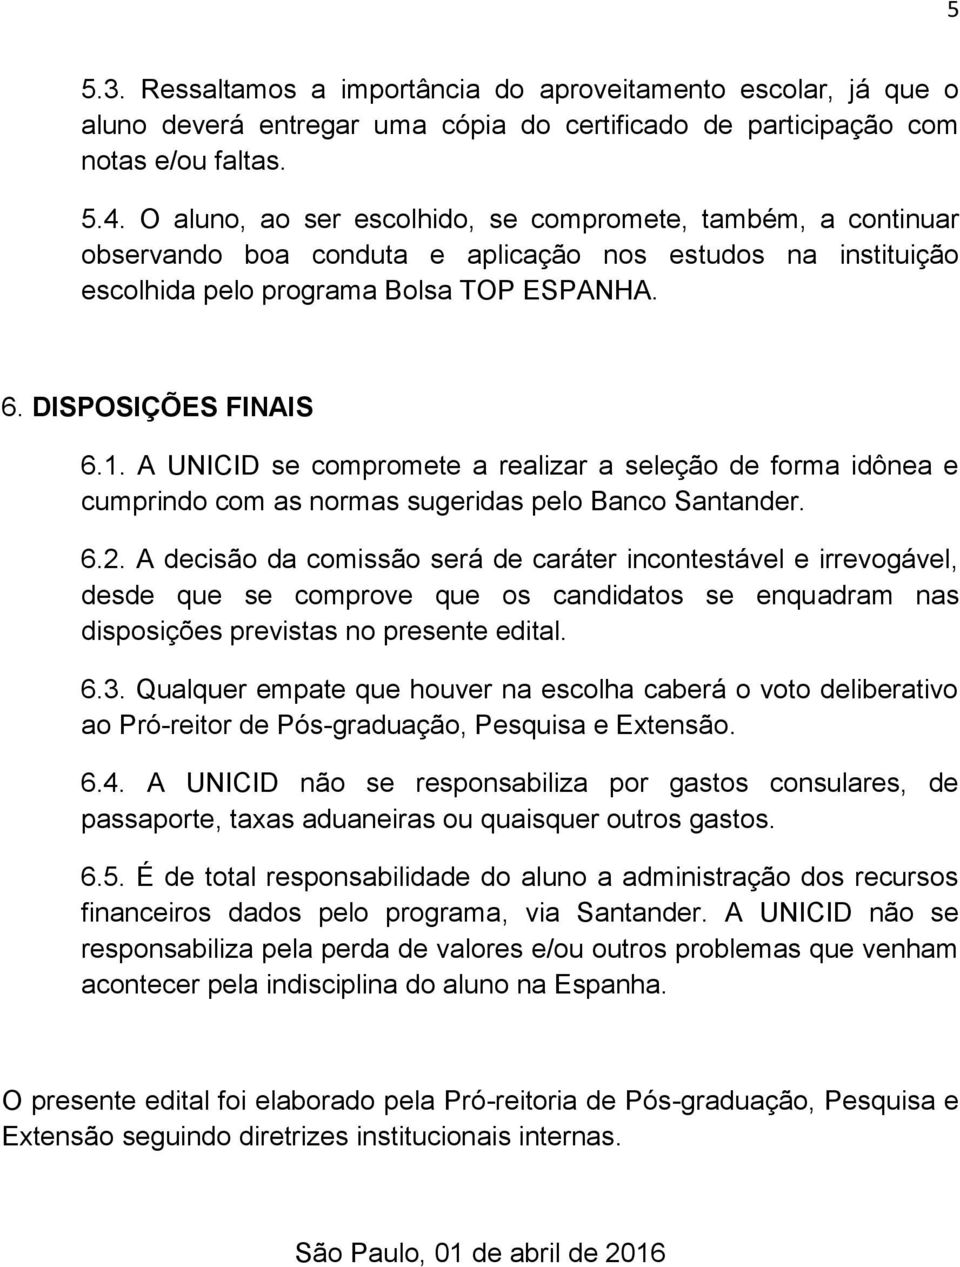 A UNICID se compromete a realizar a seleção de forma idônea e cumprindo com as normas sugeridas pelo Banco Santander. 6.2.